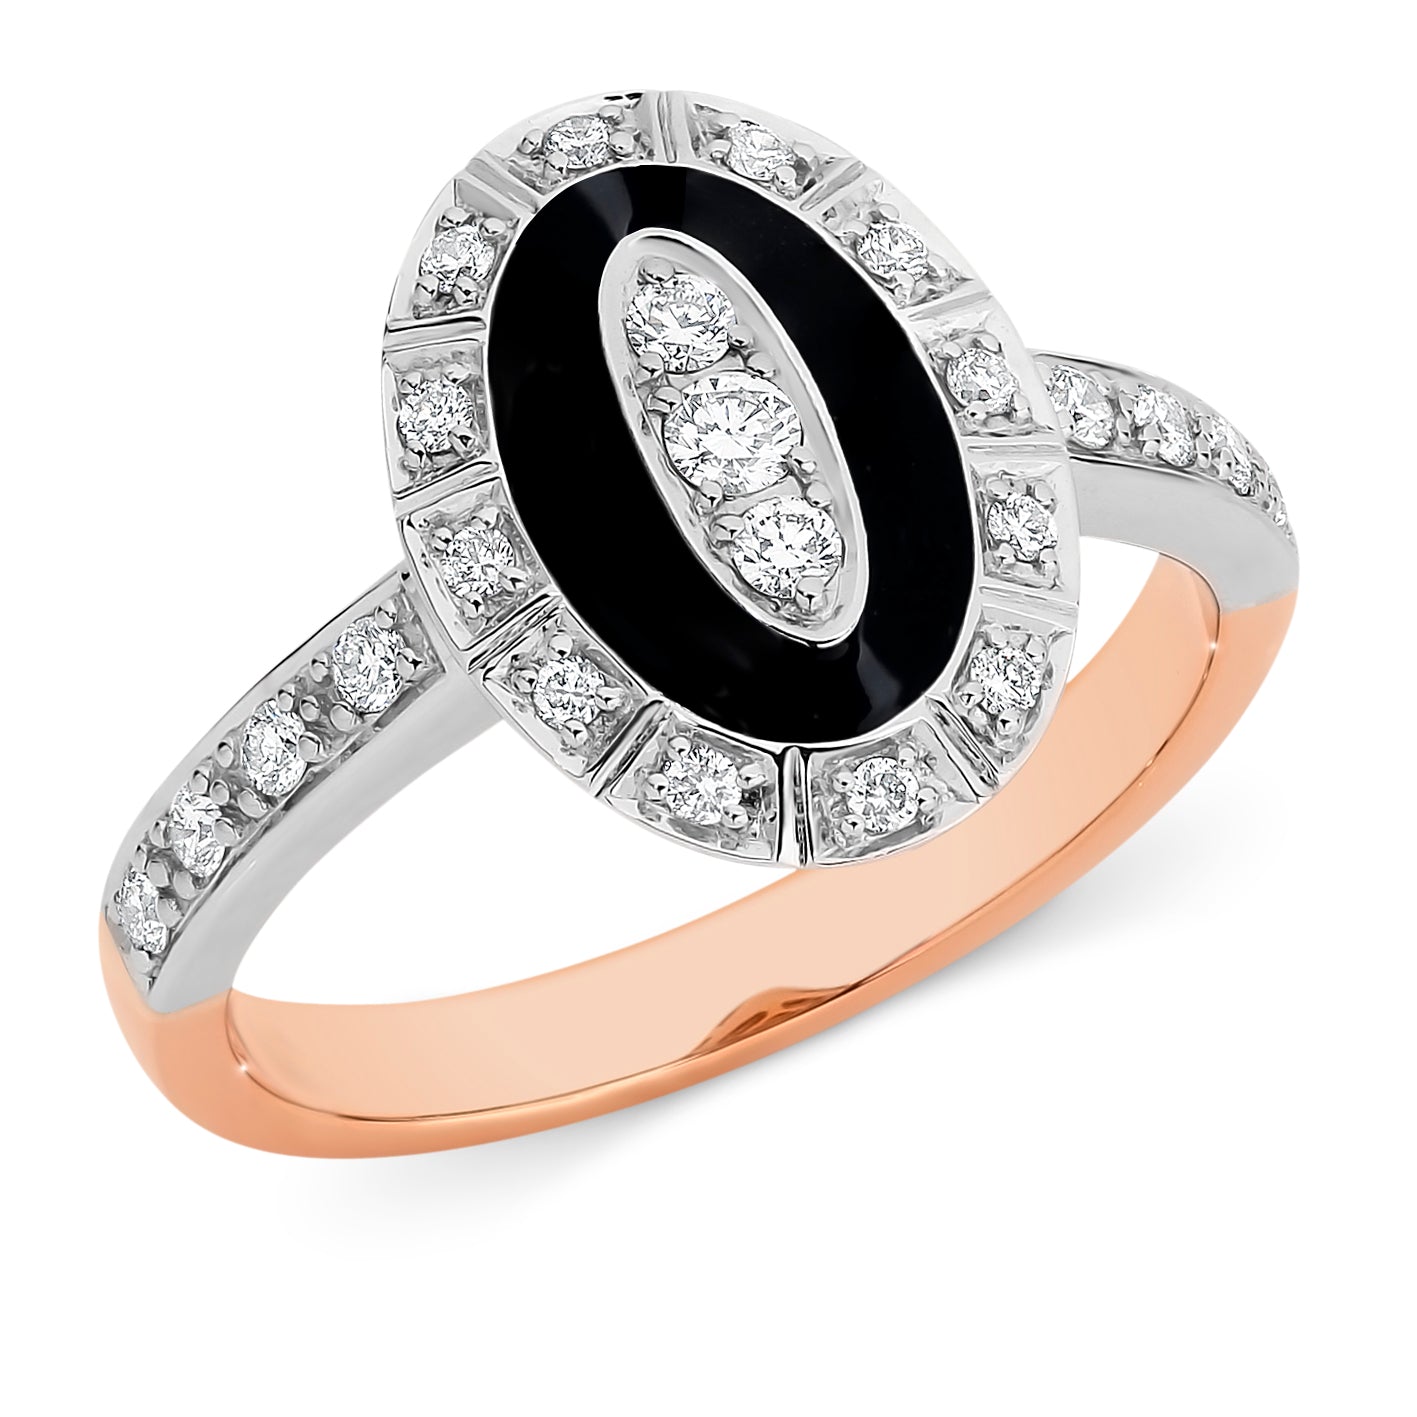 Clara' Diamond & Black Enamel Ring in 9ct Rose & White Gold